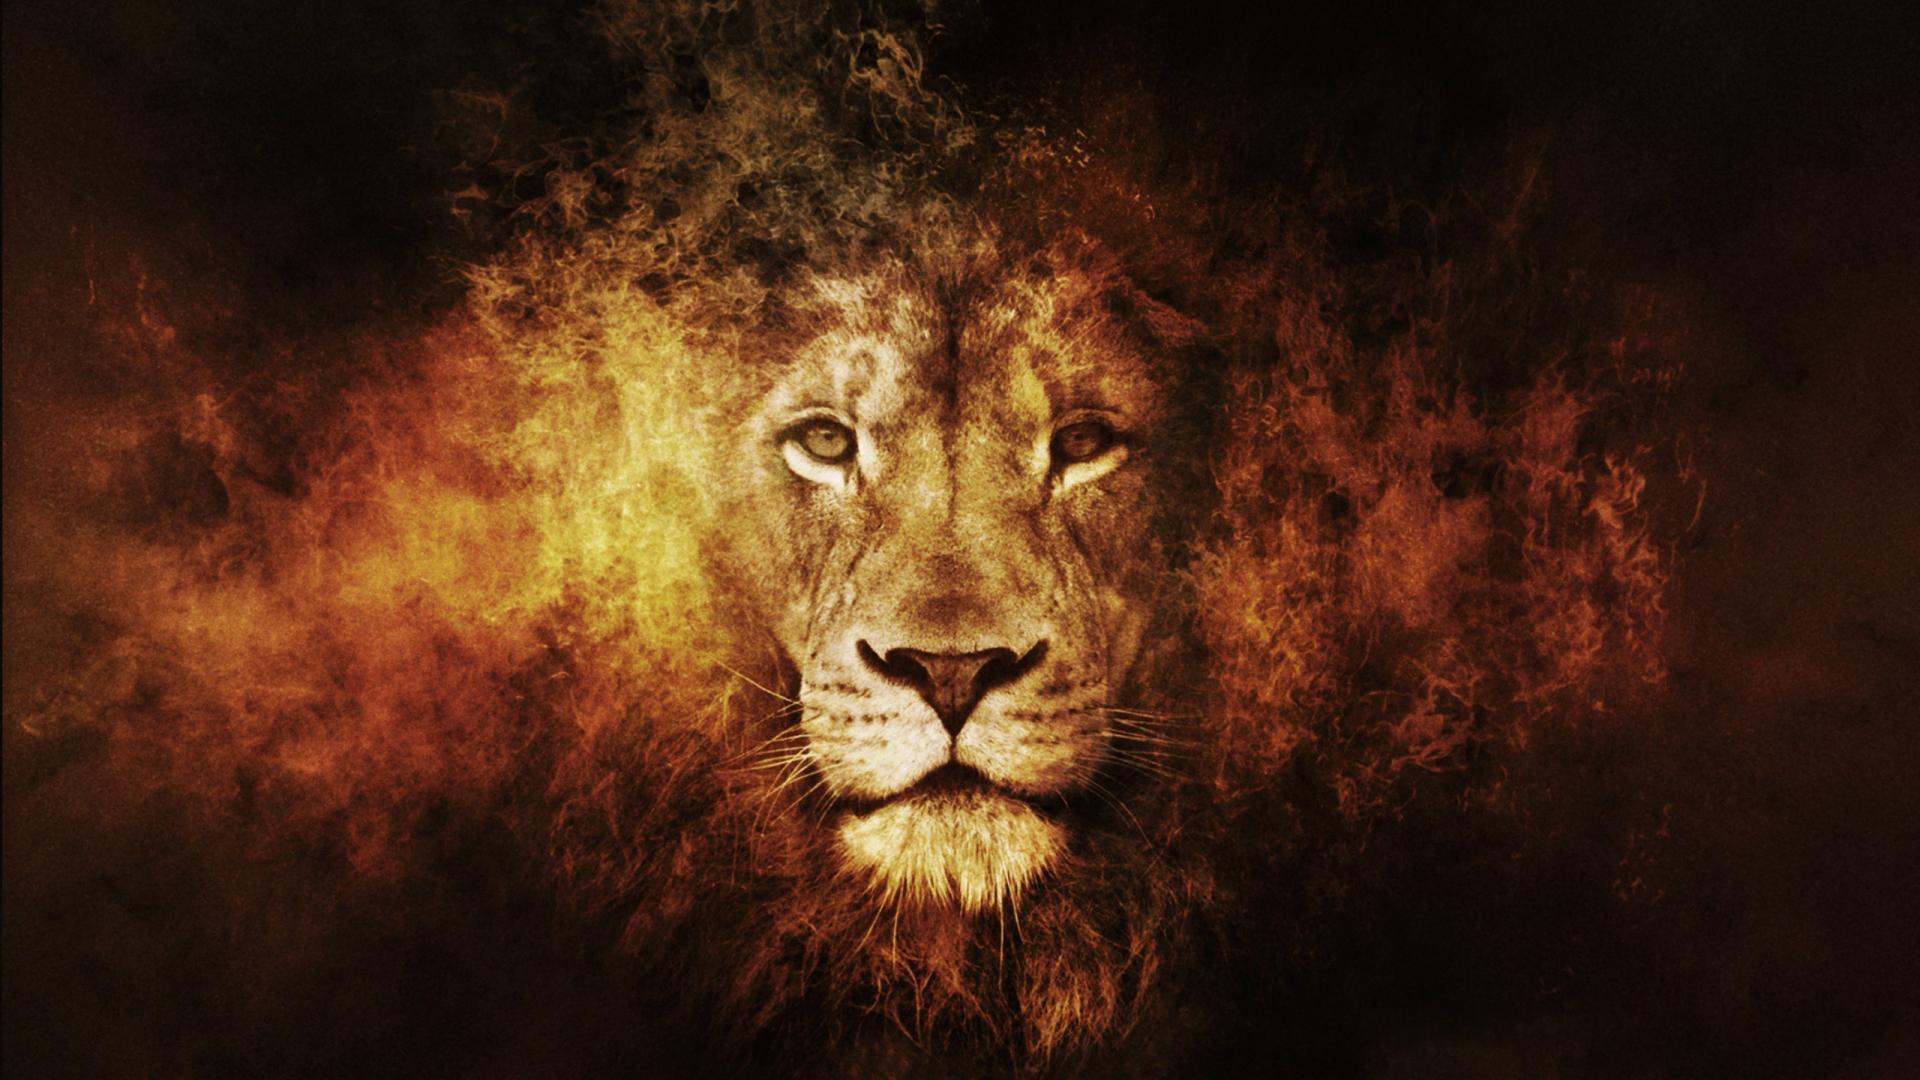 aslan lion wallpaper